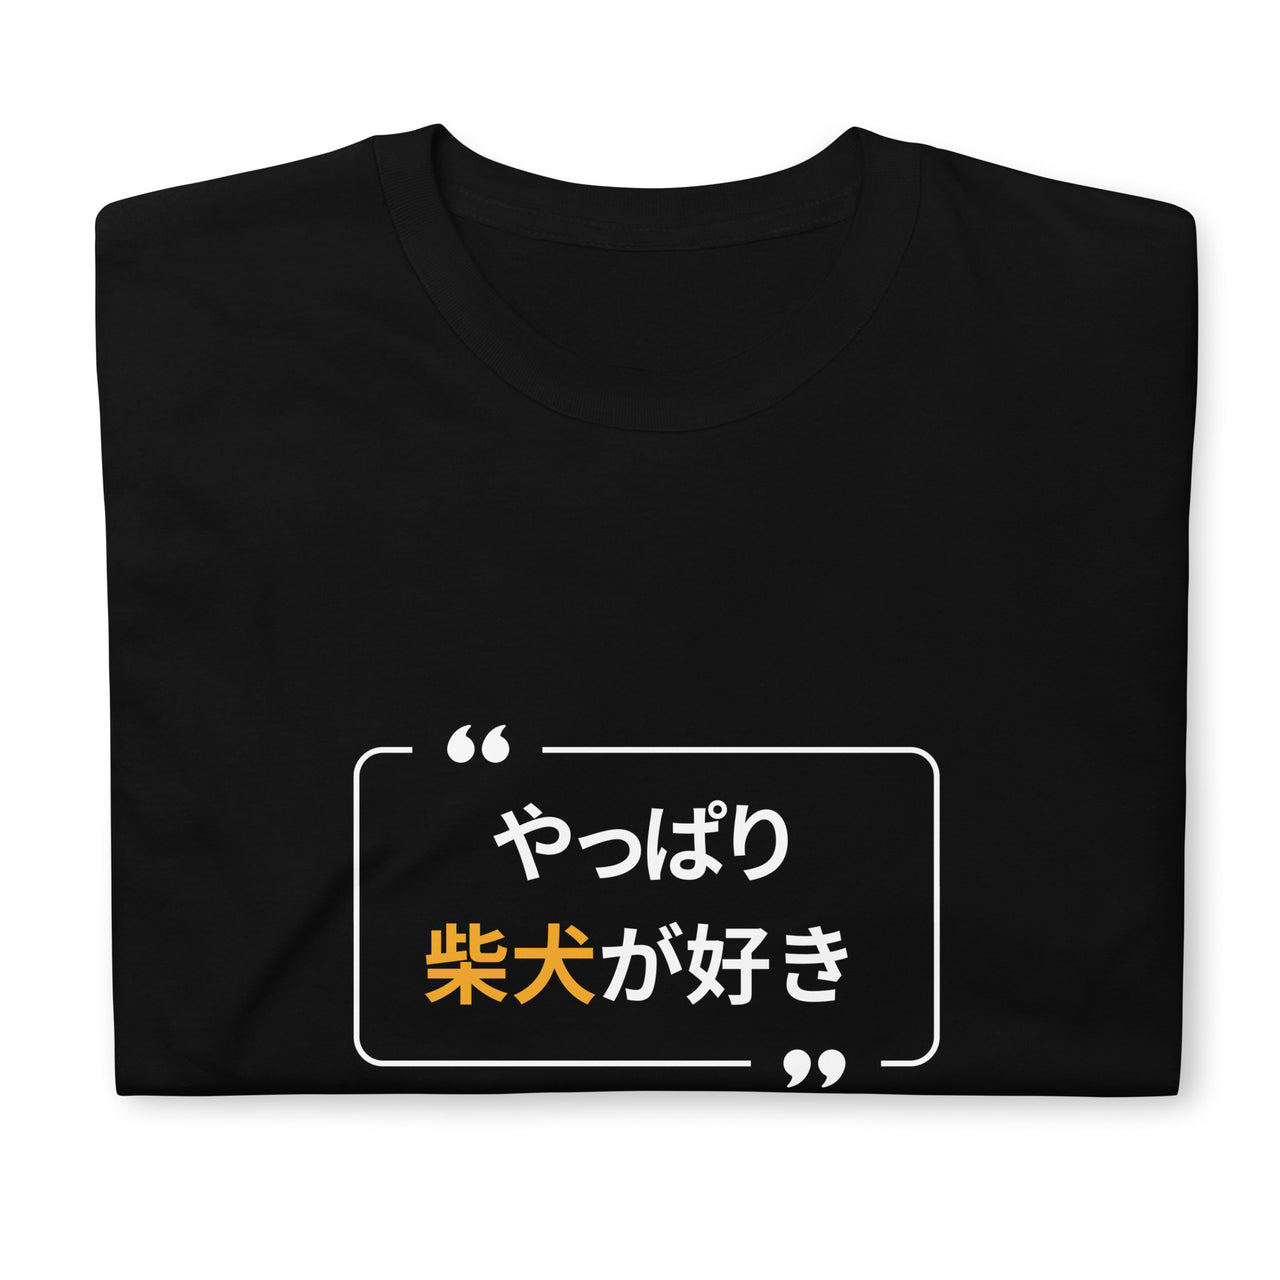 Of Course I Like Shiba Inu T-Shirt